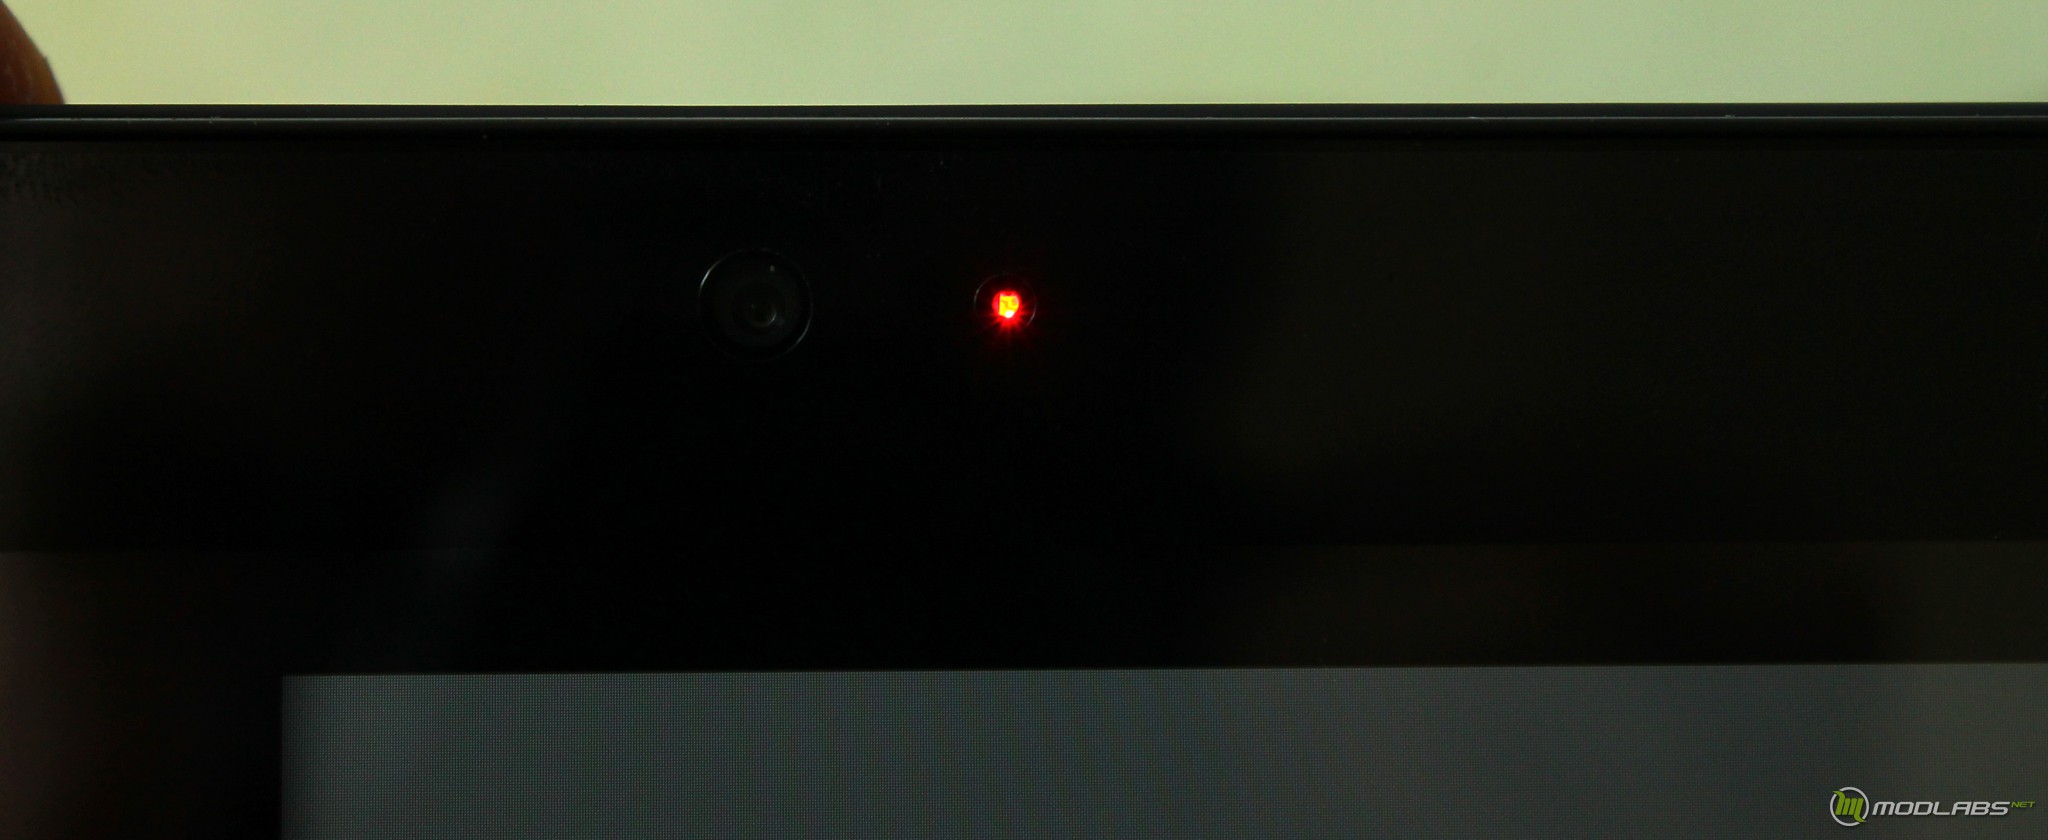 Выключи станцию экрана. Красные точки на экране телевизора. Красные мерцающие точки на мониторе. Красная лампочка на телевизоре. Камера с красной точкой.